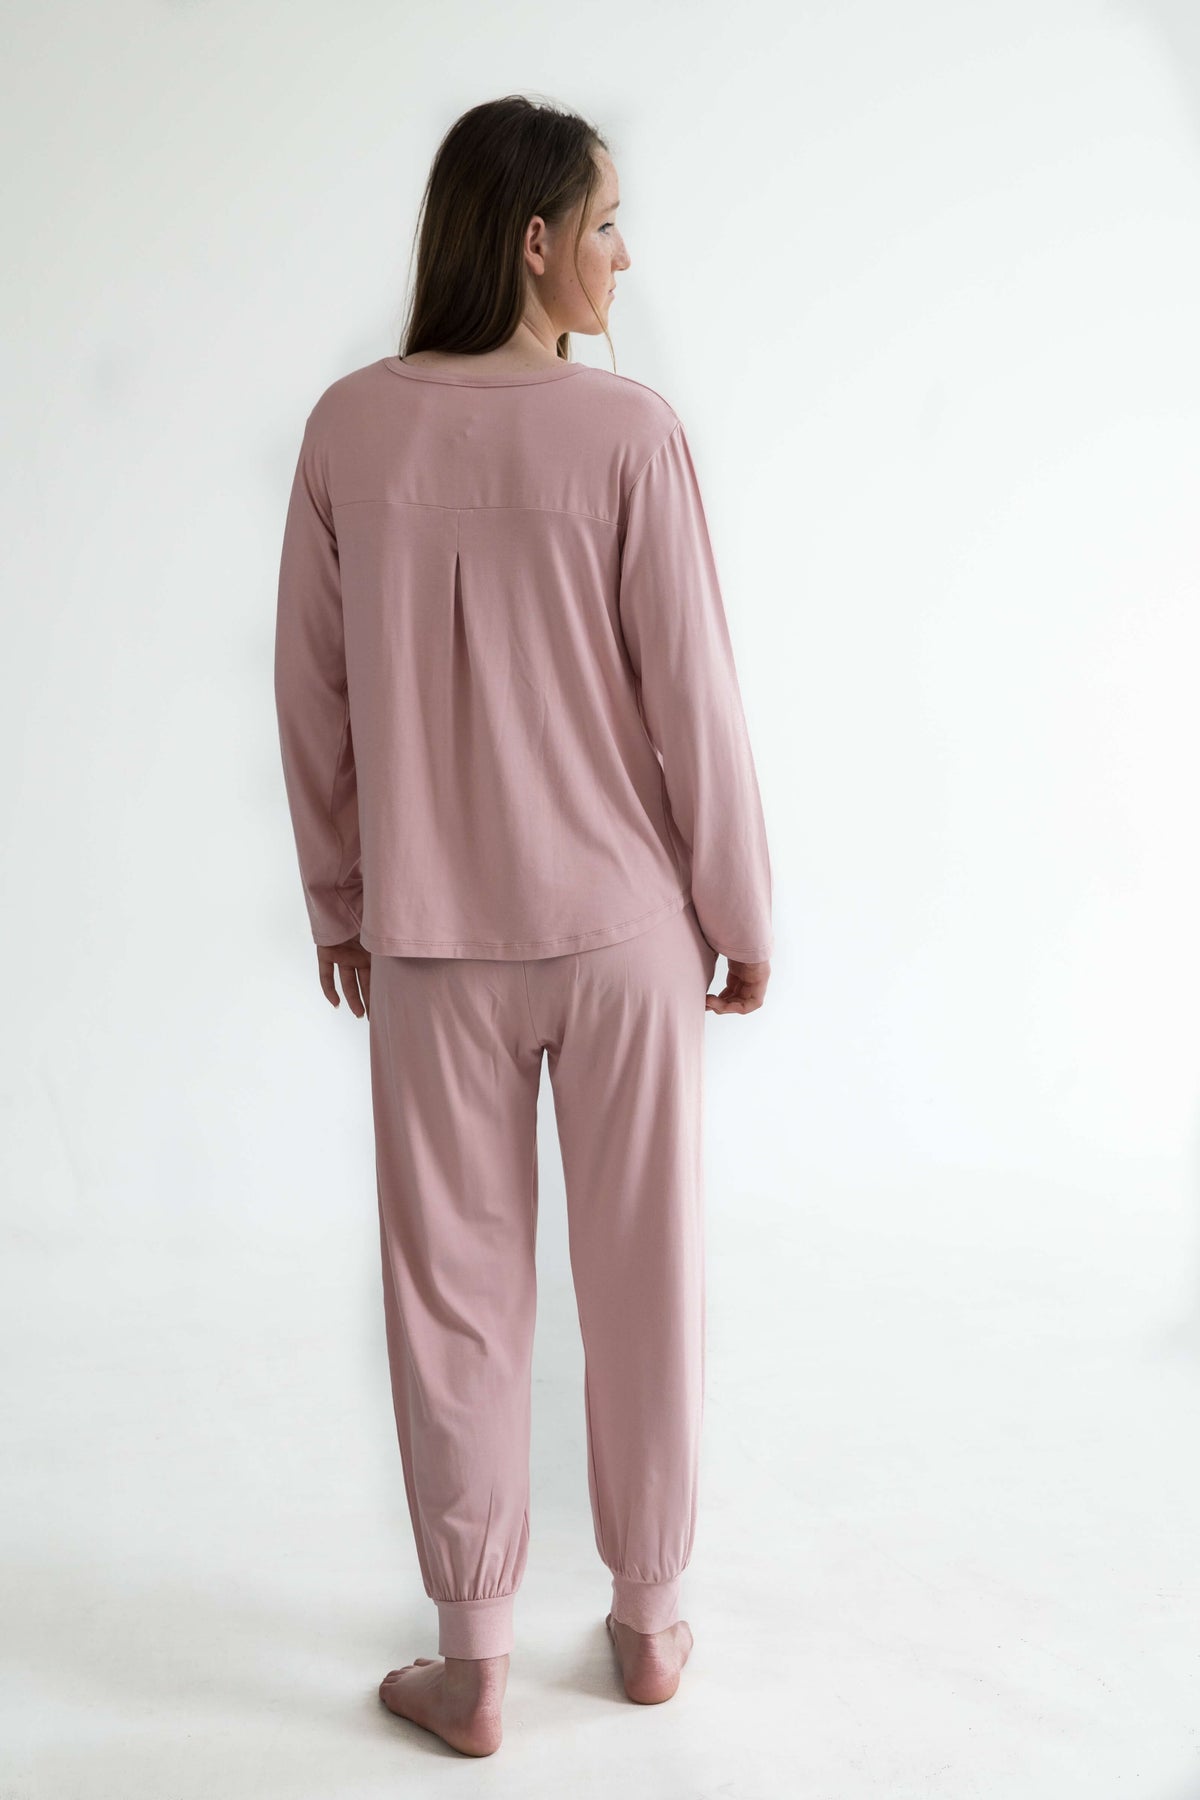 pink teen girls bamboo pyjamas long pants elastic waist, pockets and drawstring by Love Haidee Australia back view Ella